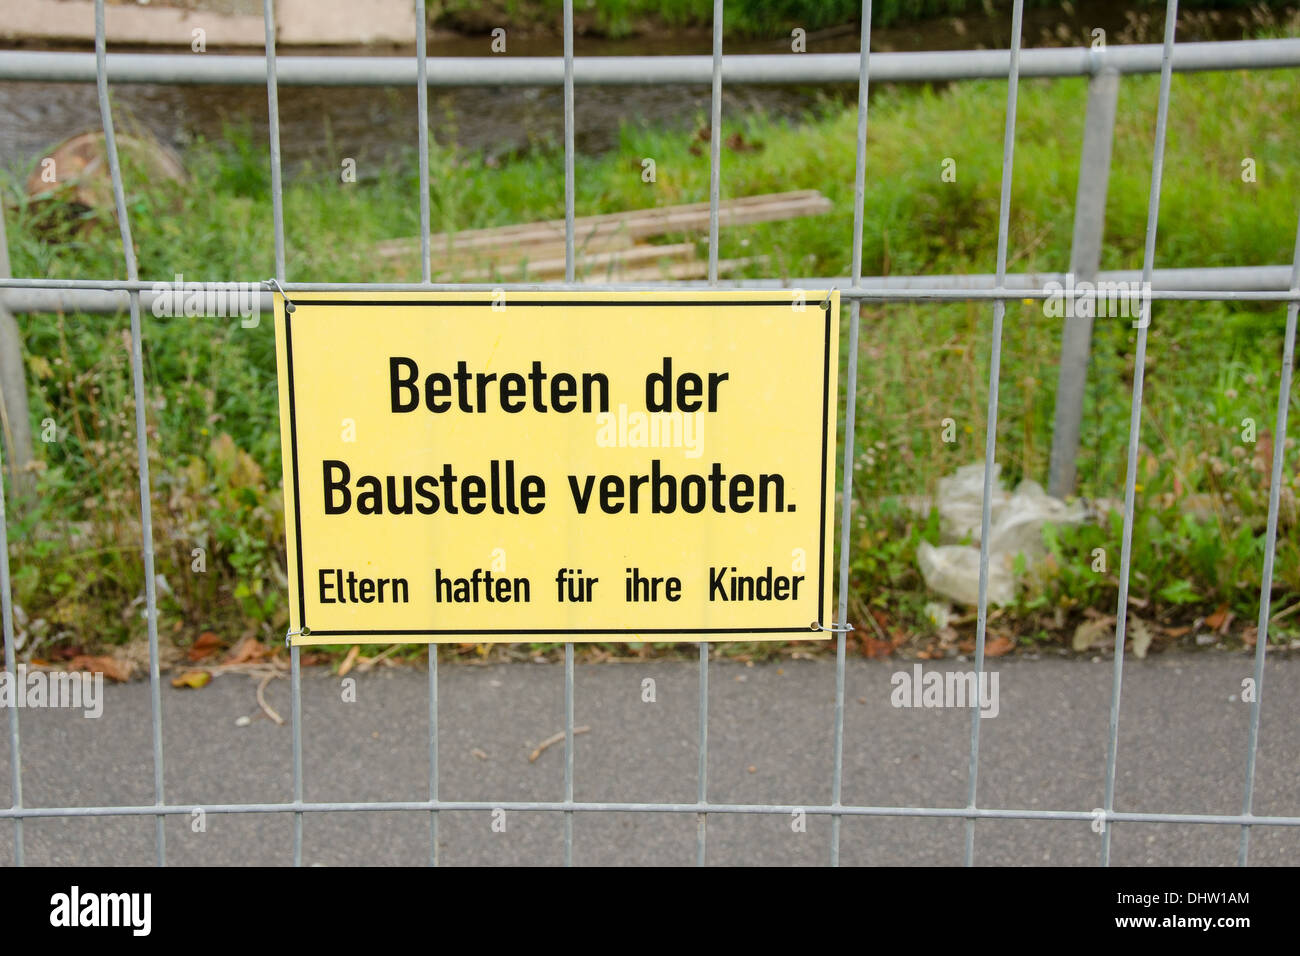 Costruzione tedesca sito segno di avvertimento betreten der baustelle verboten Foto Stock